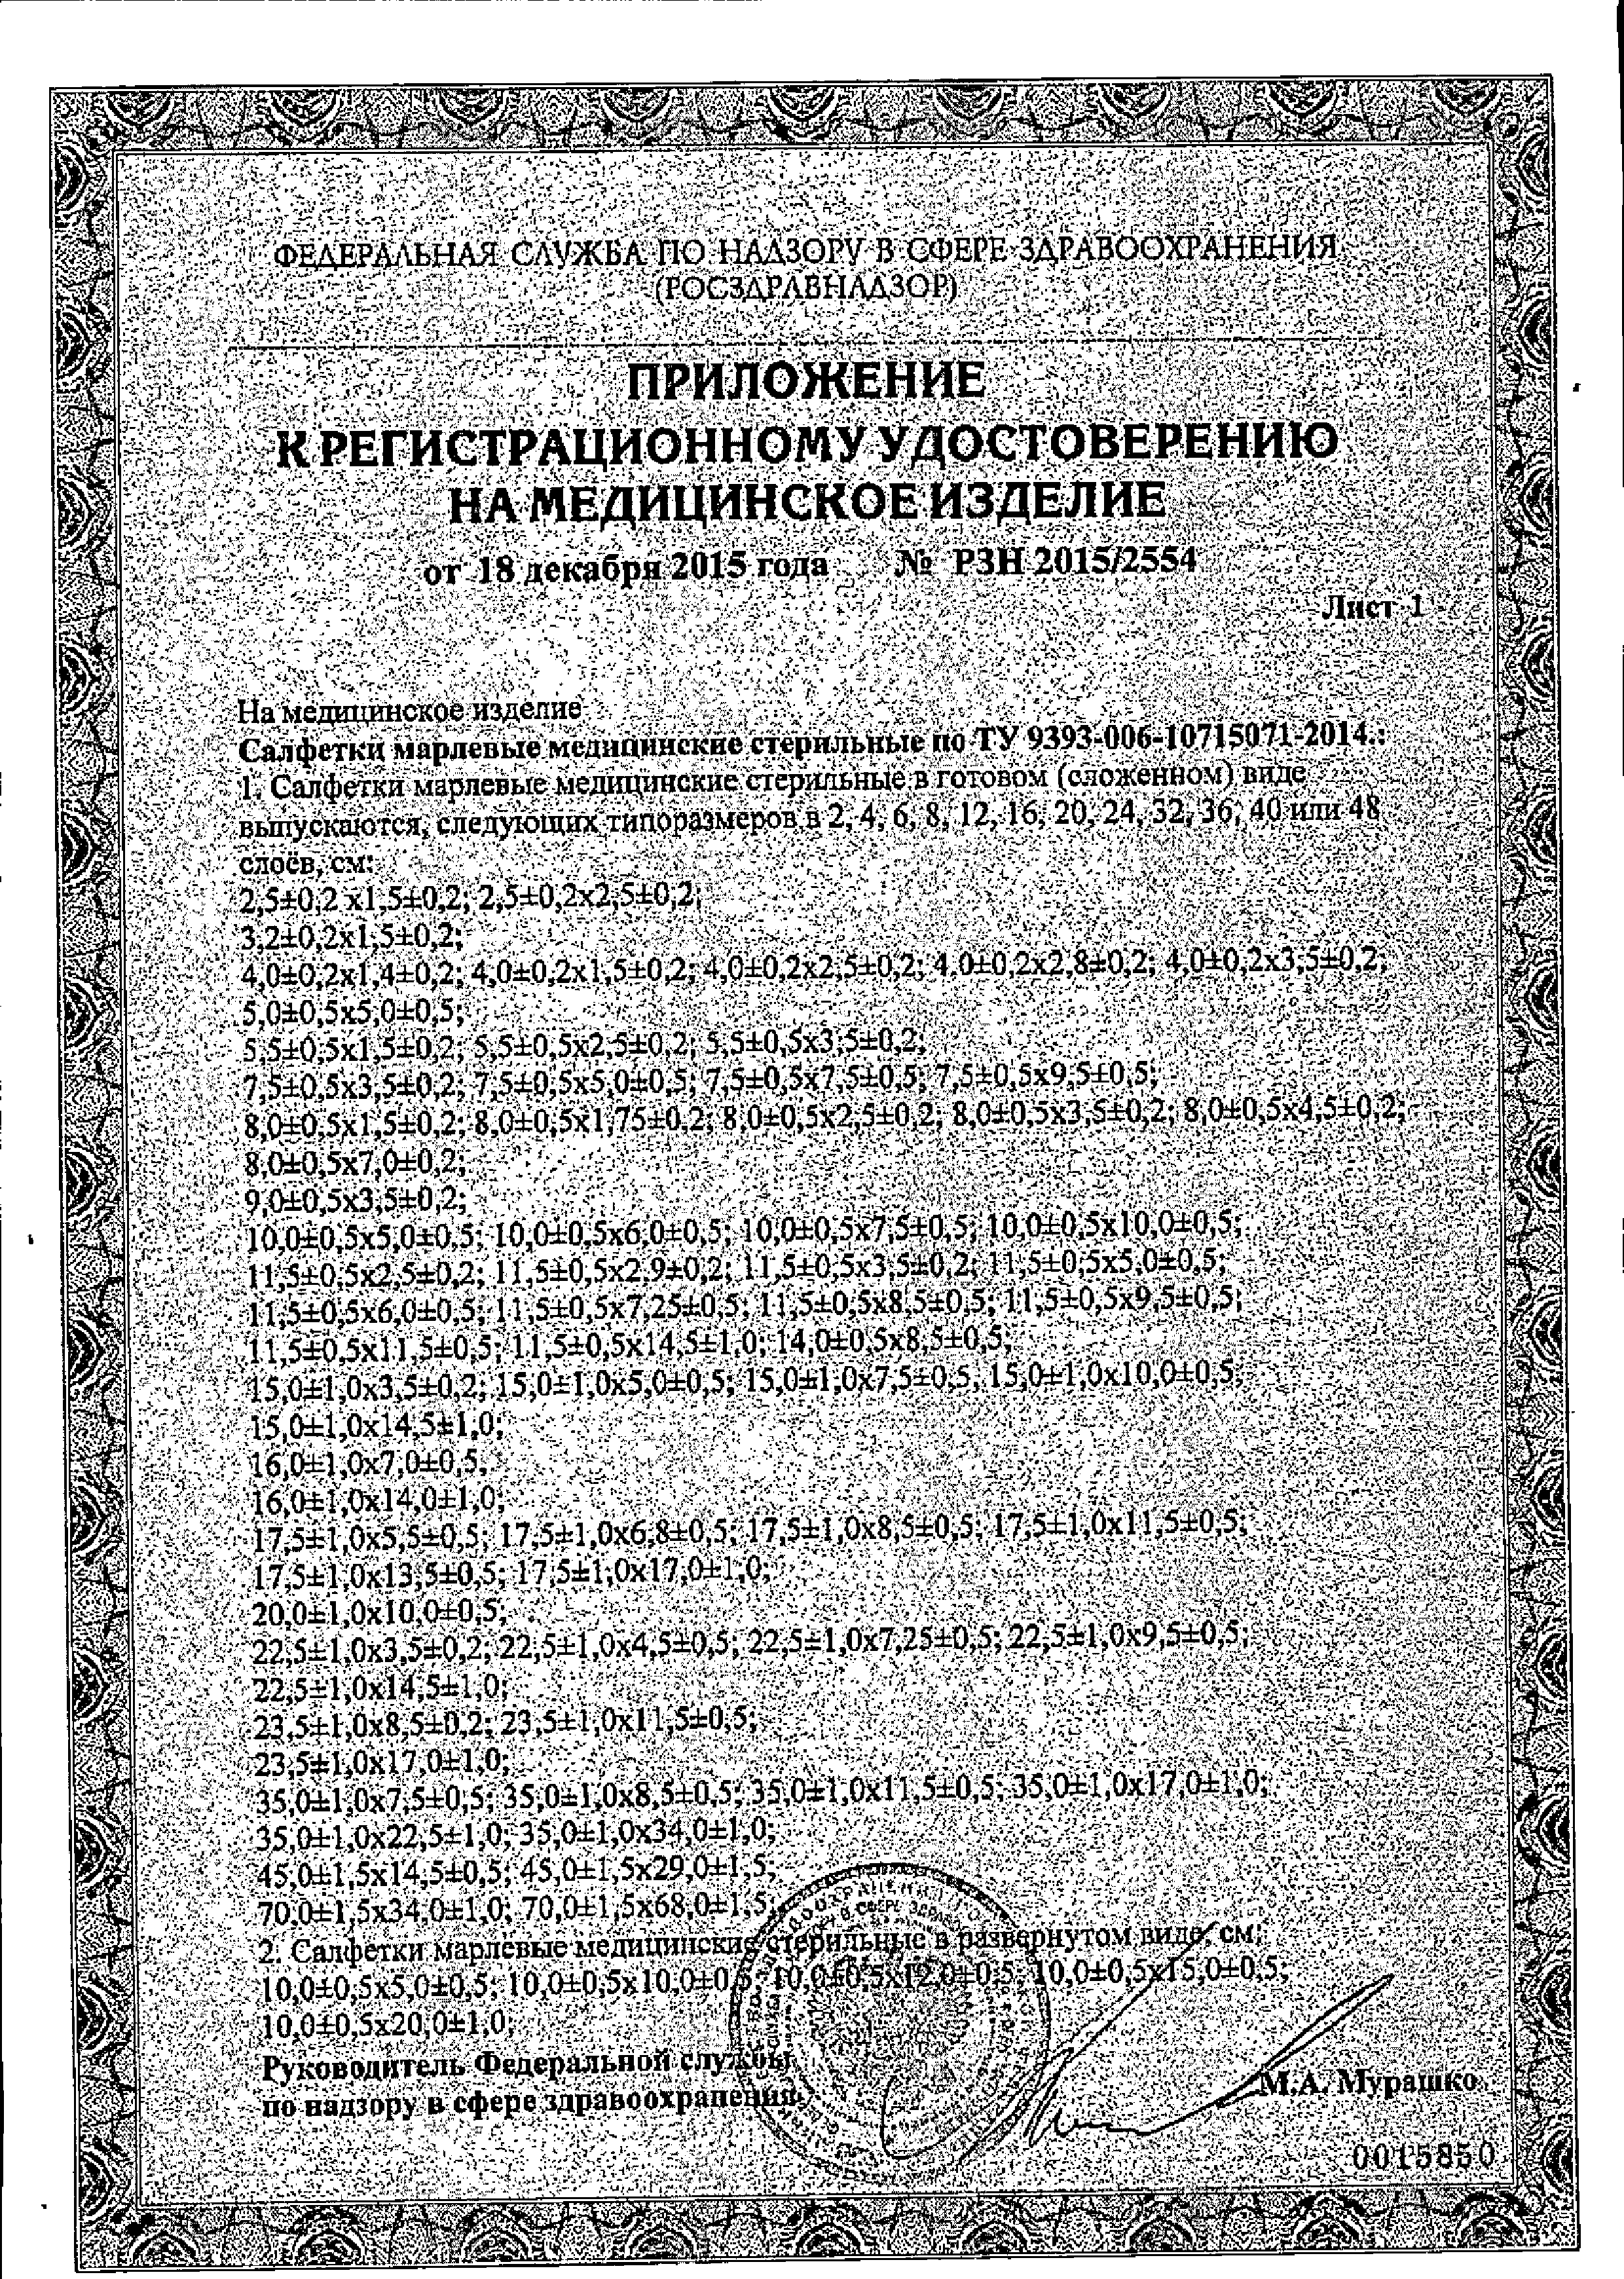 Клинса салфетки марлевые стерильные сертификат